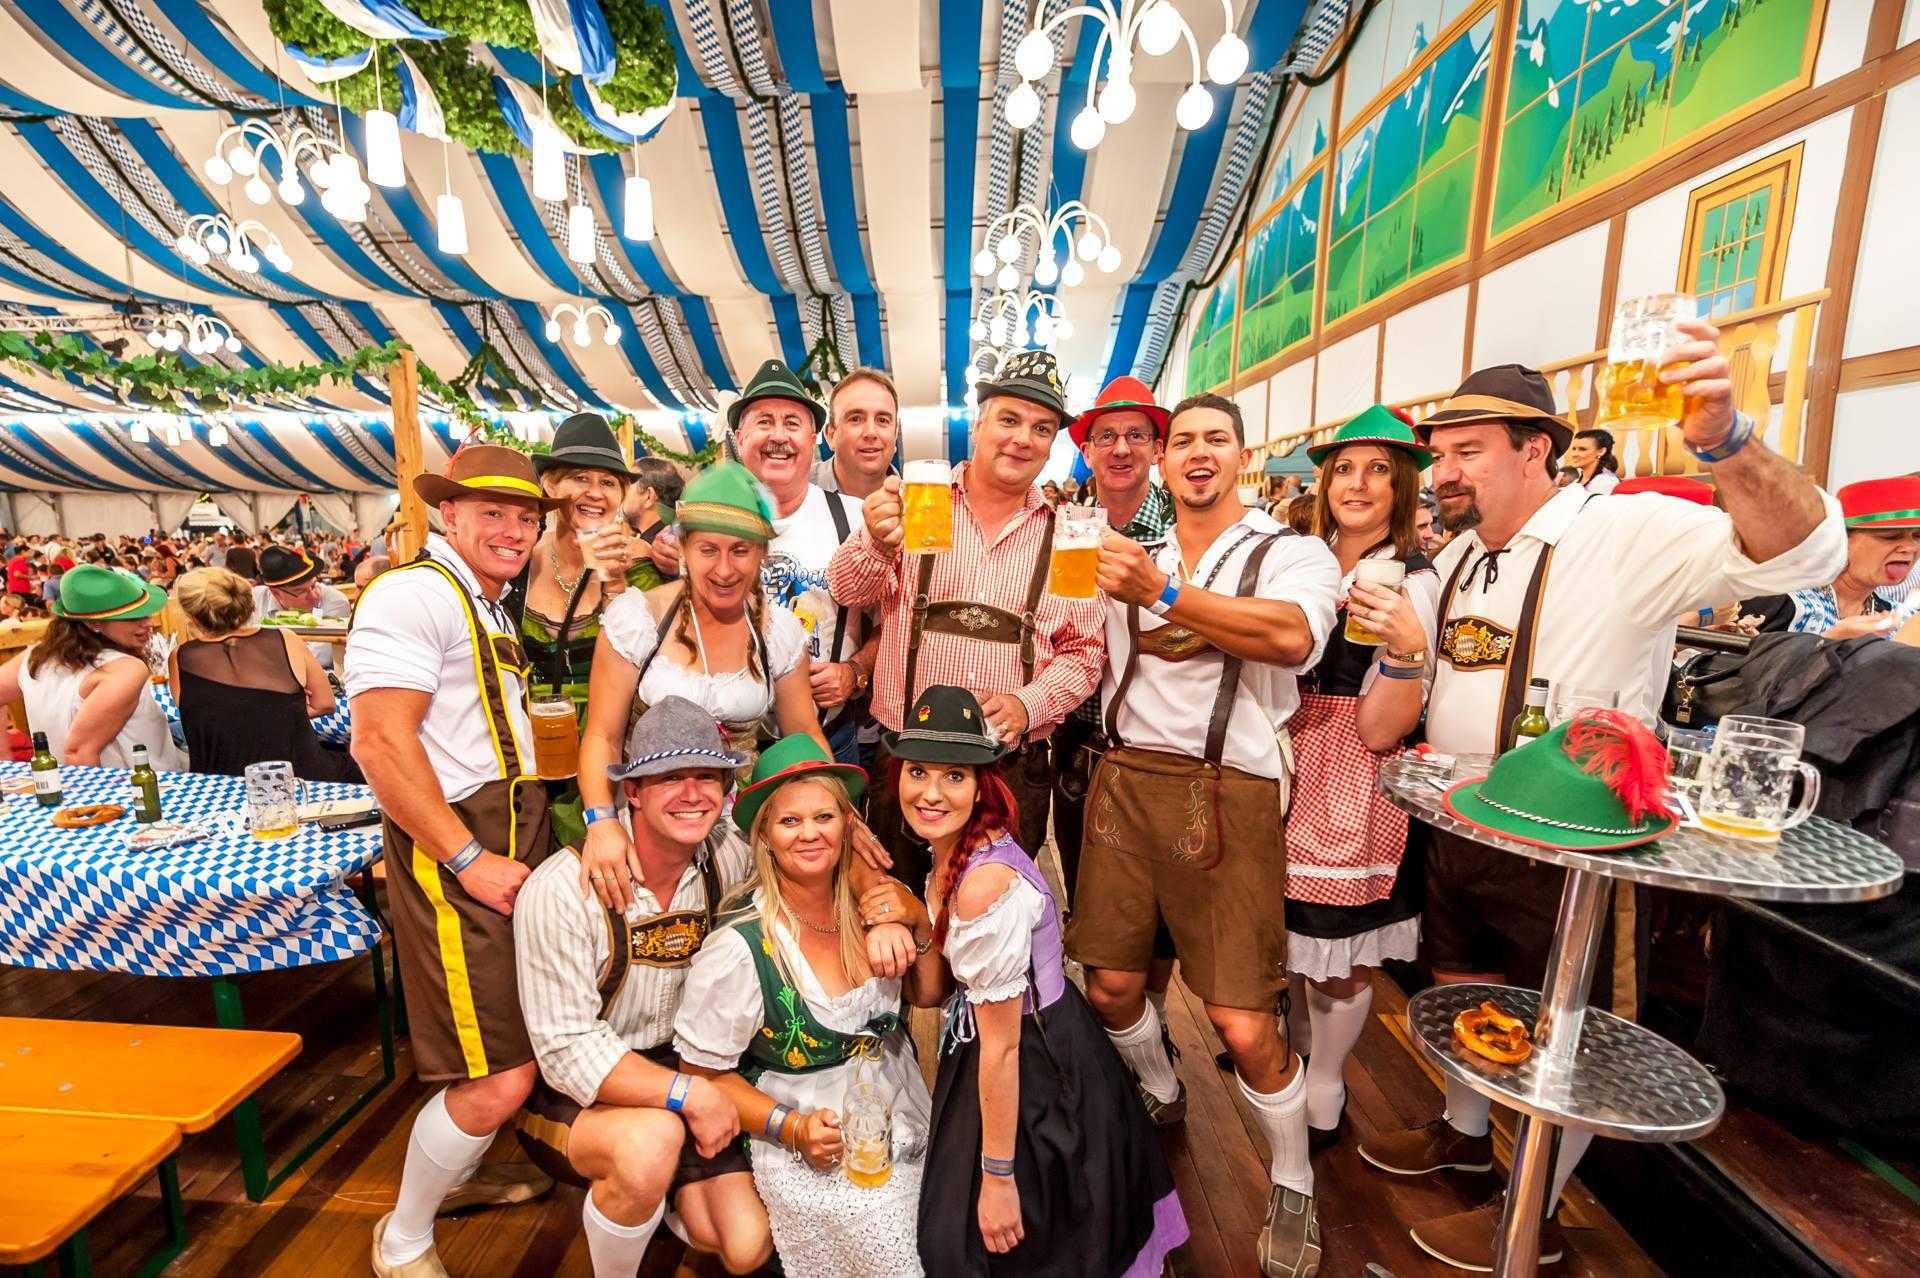 В Краснодаре пивной фестиваль Октоберфест проводят в немецкой деревне Фестиваль проводят не с таким размахом как в Мюнхене и длится он всего два дня суббота и воскресенье в конце сентября, как правило, в его последние выходные